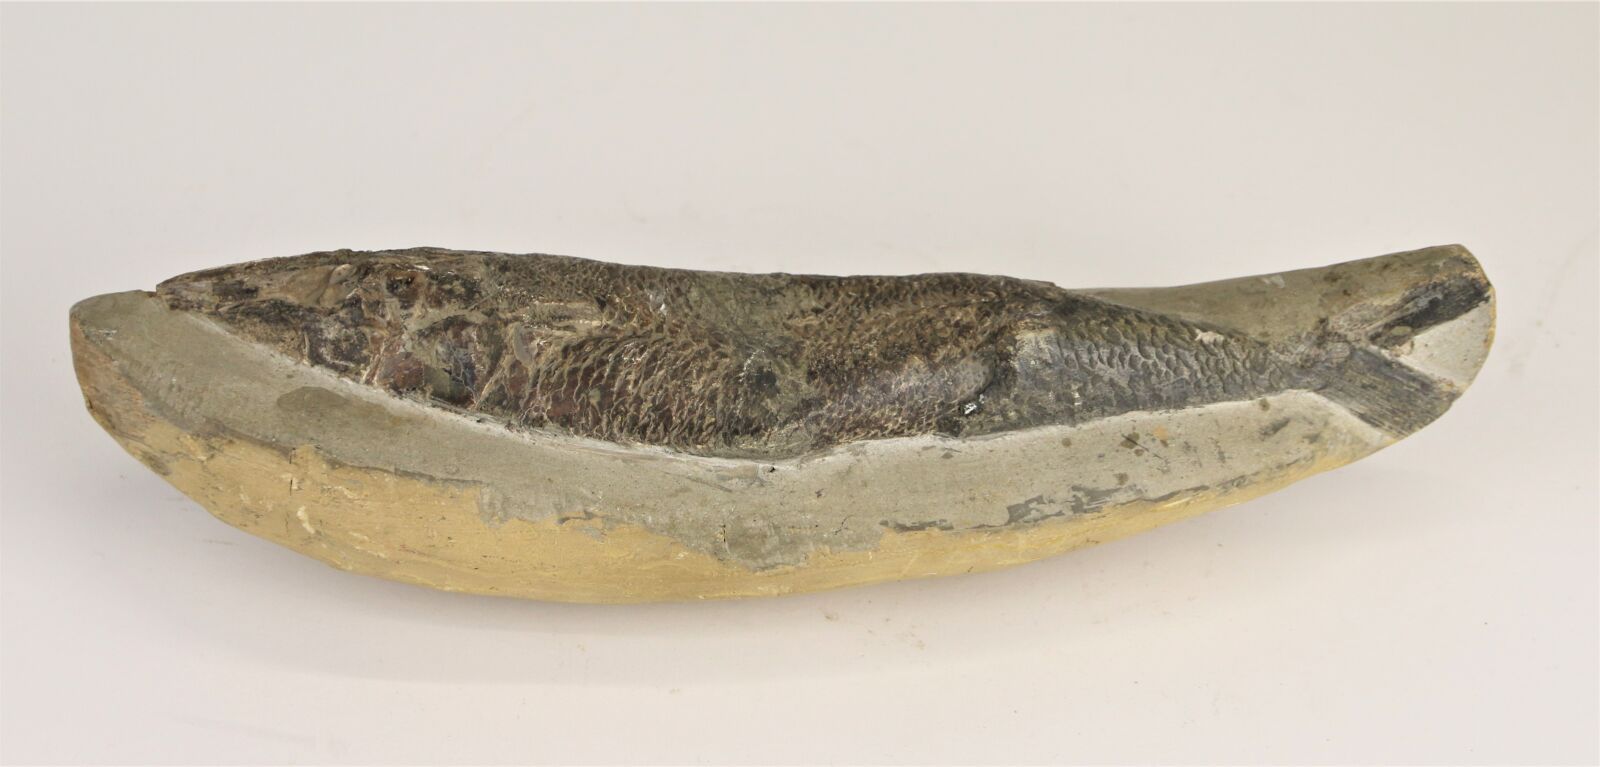 Null 鱼类化石。
长度：30厘米